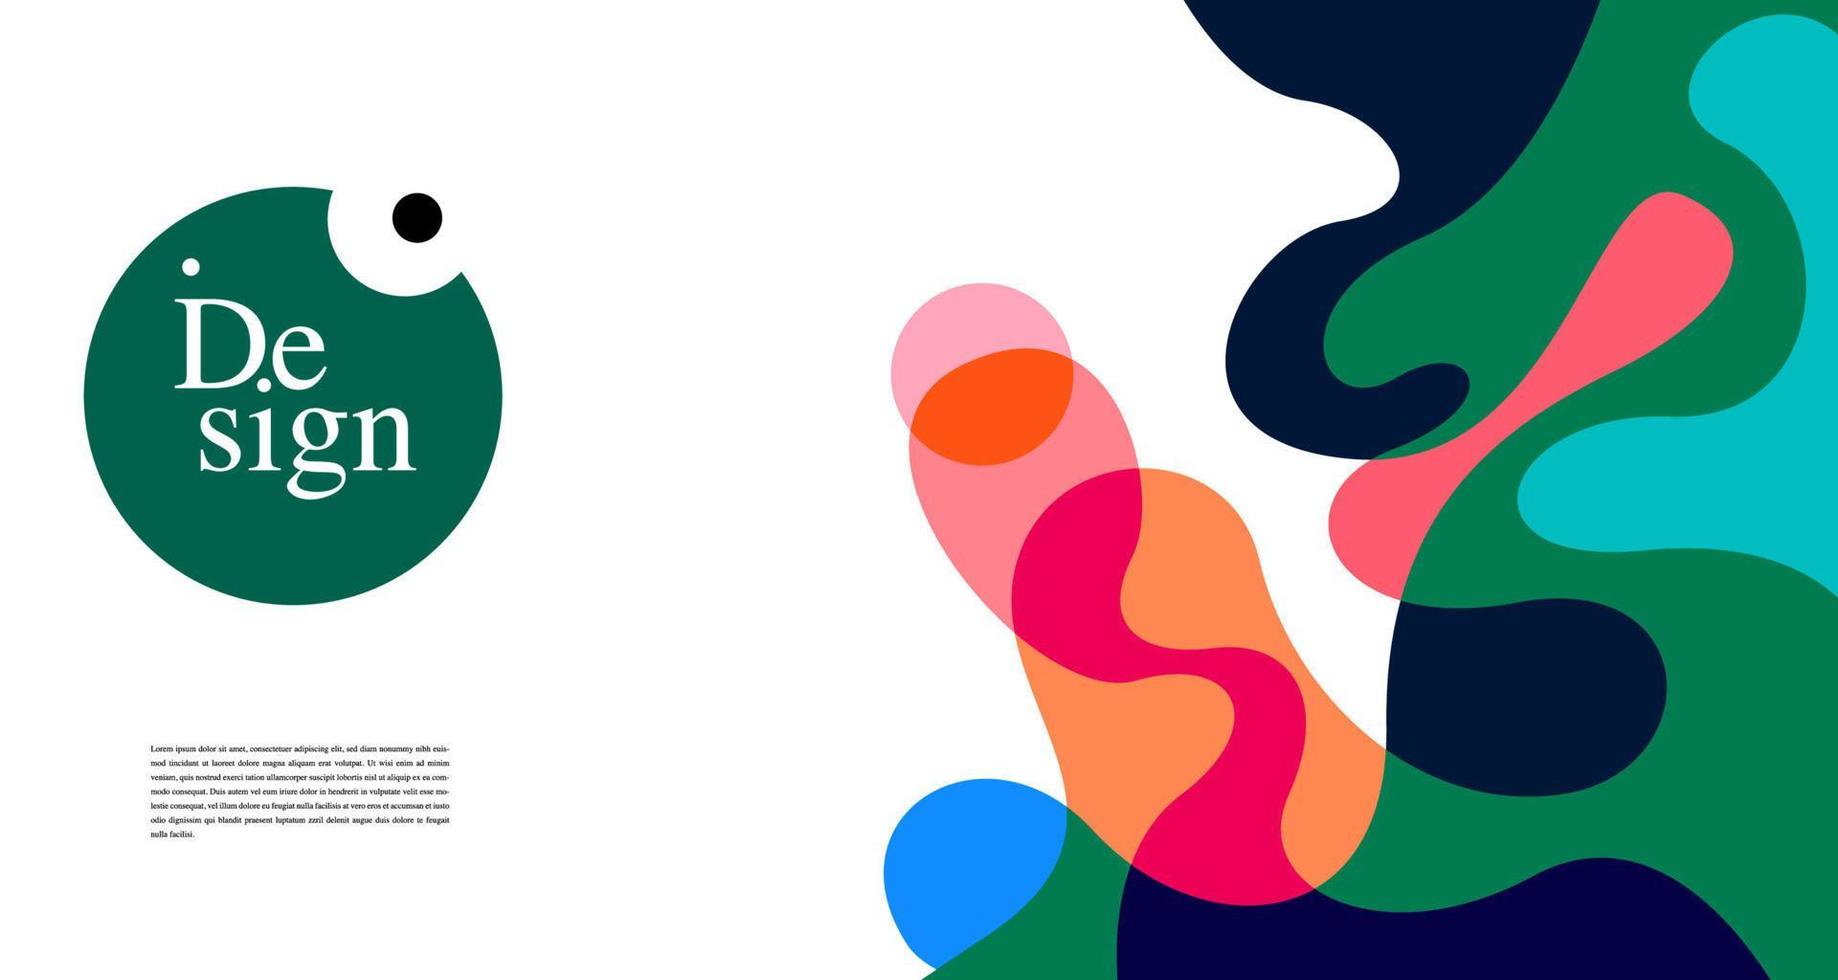 kleurrijk abstract banier sjabloon met dummy tekst voor web ontwerp, landen bladzijde, en afdrukken materiaal vector